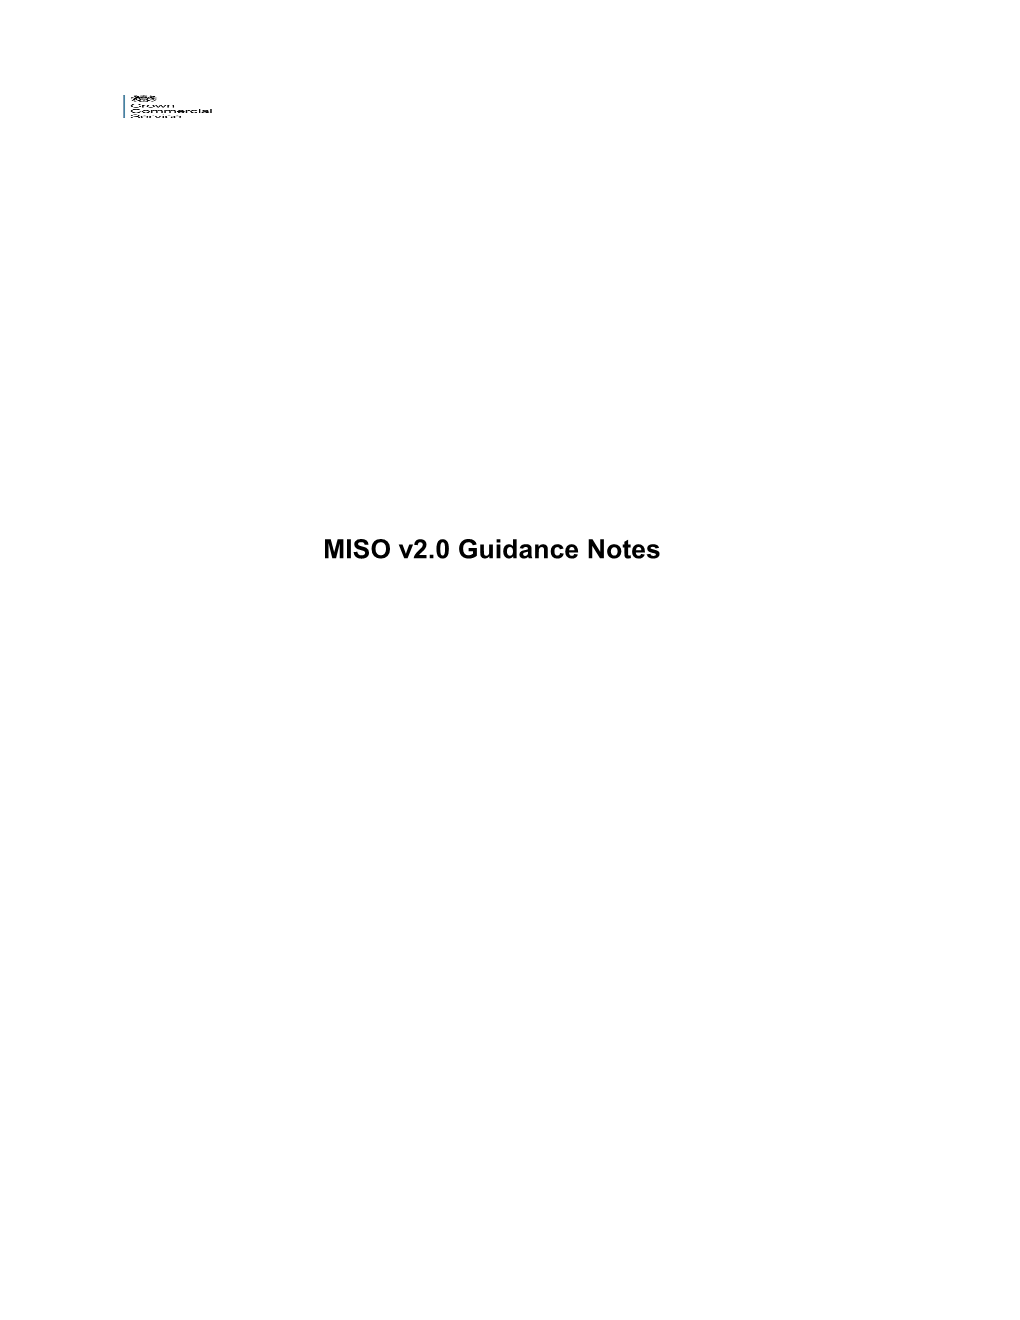 MISO V2.0 Guidancenotes